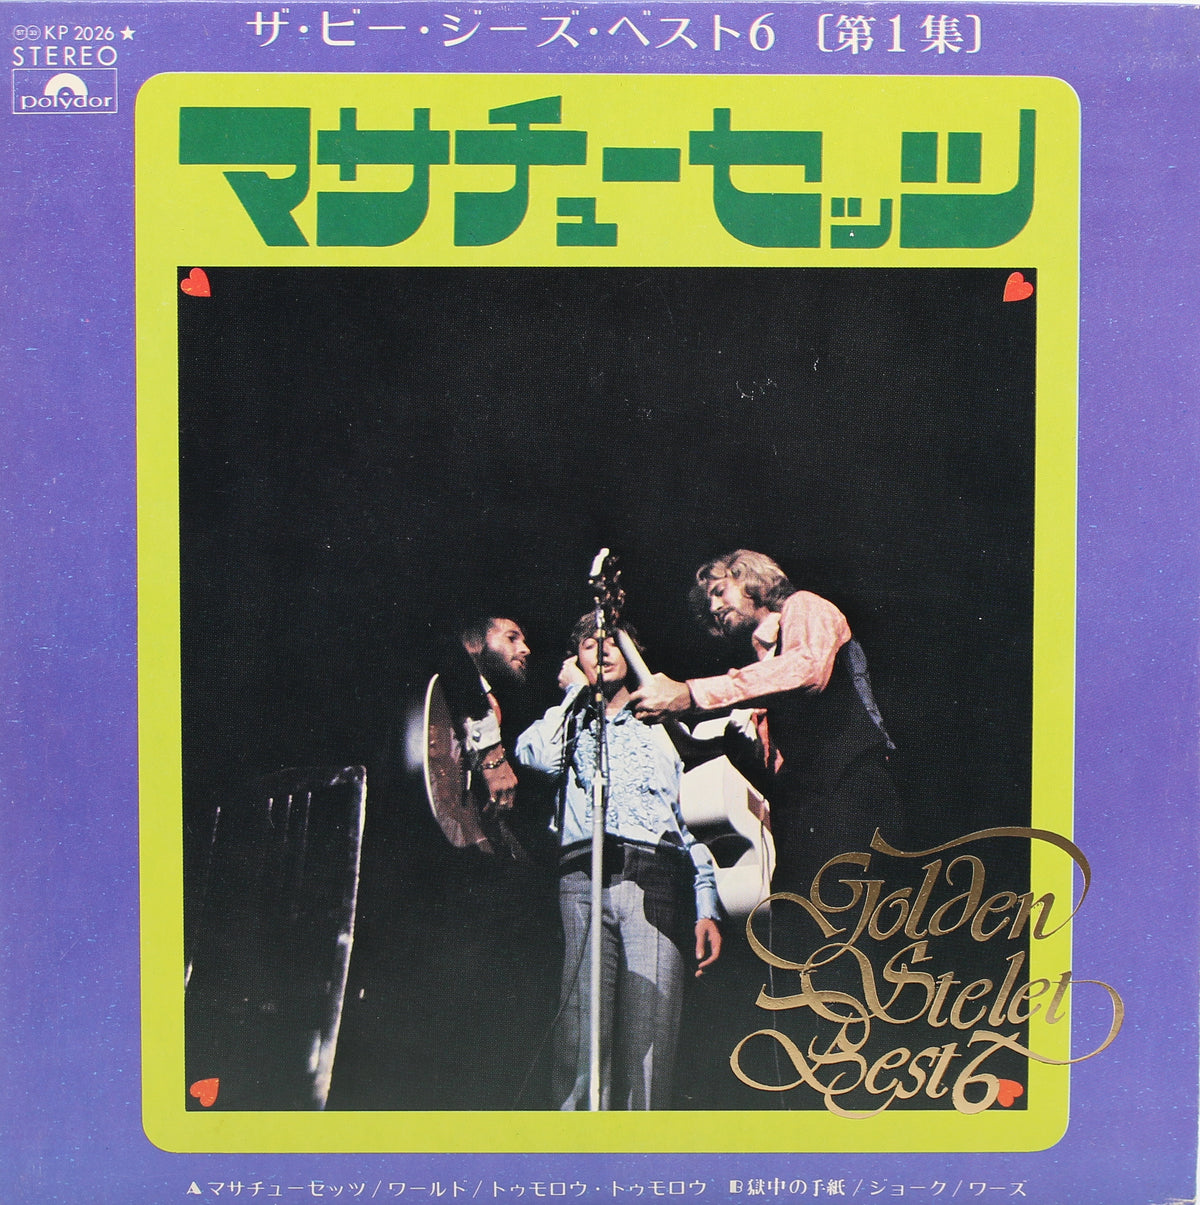 Bee Gees, Massachusetts, Vinyl 7&quot; EP (33⅓rpm), Japan 1972